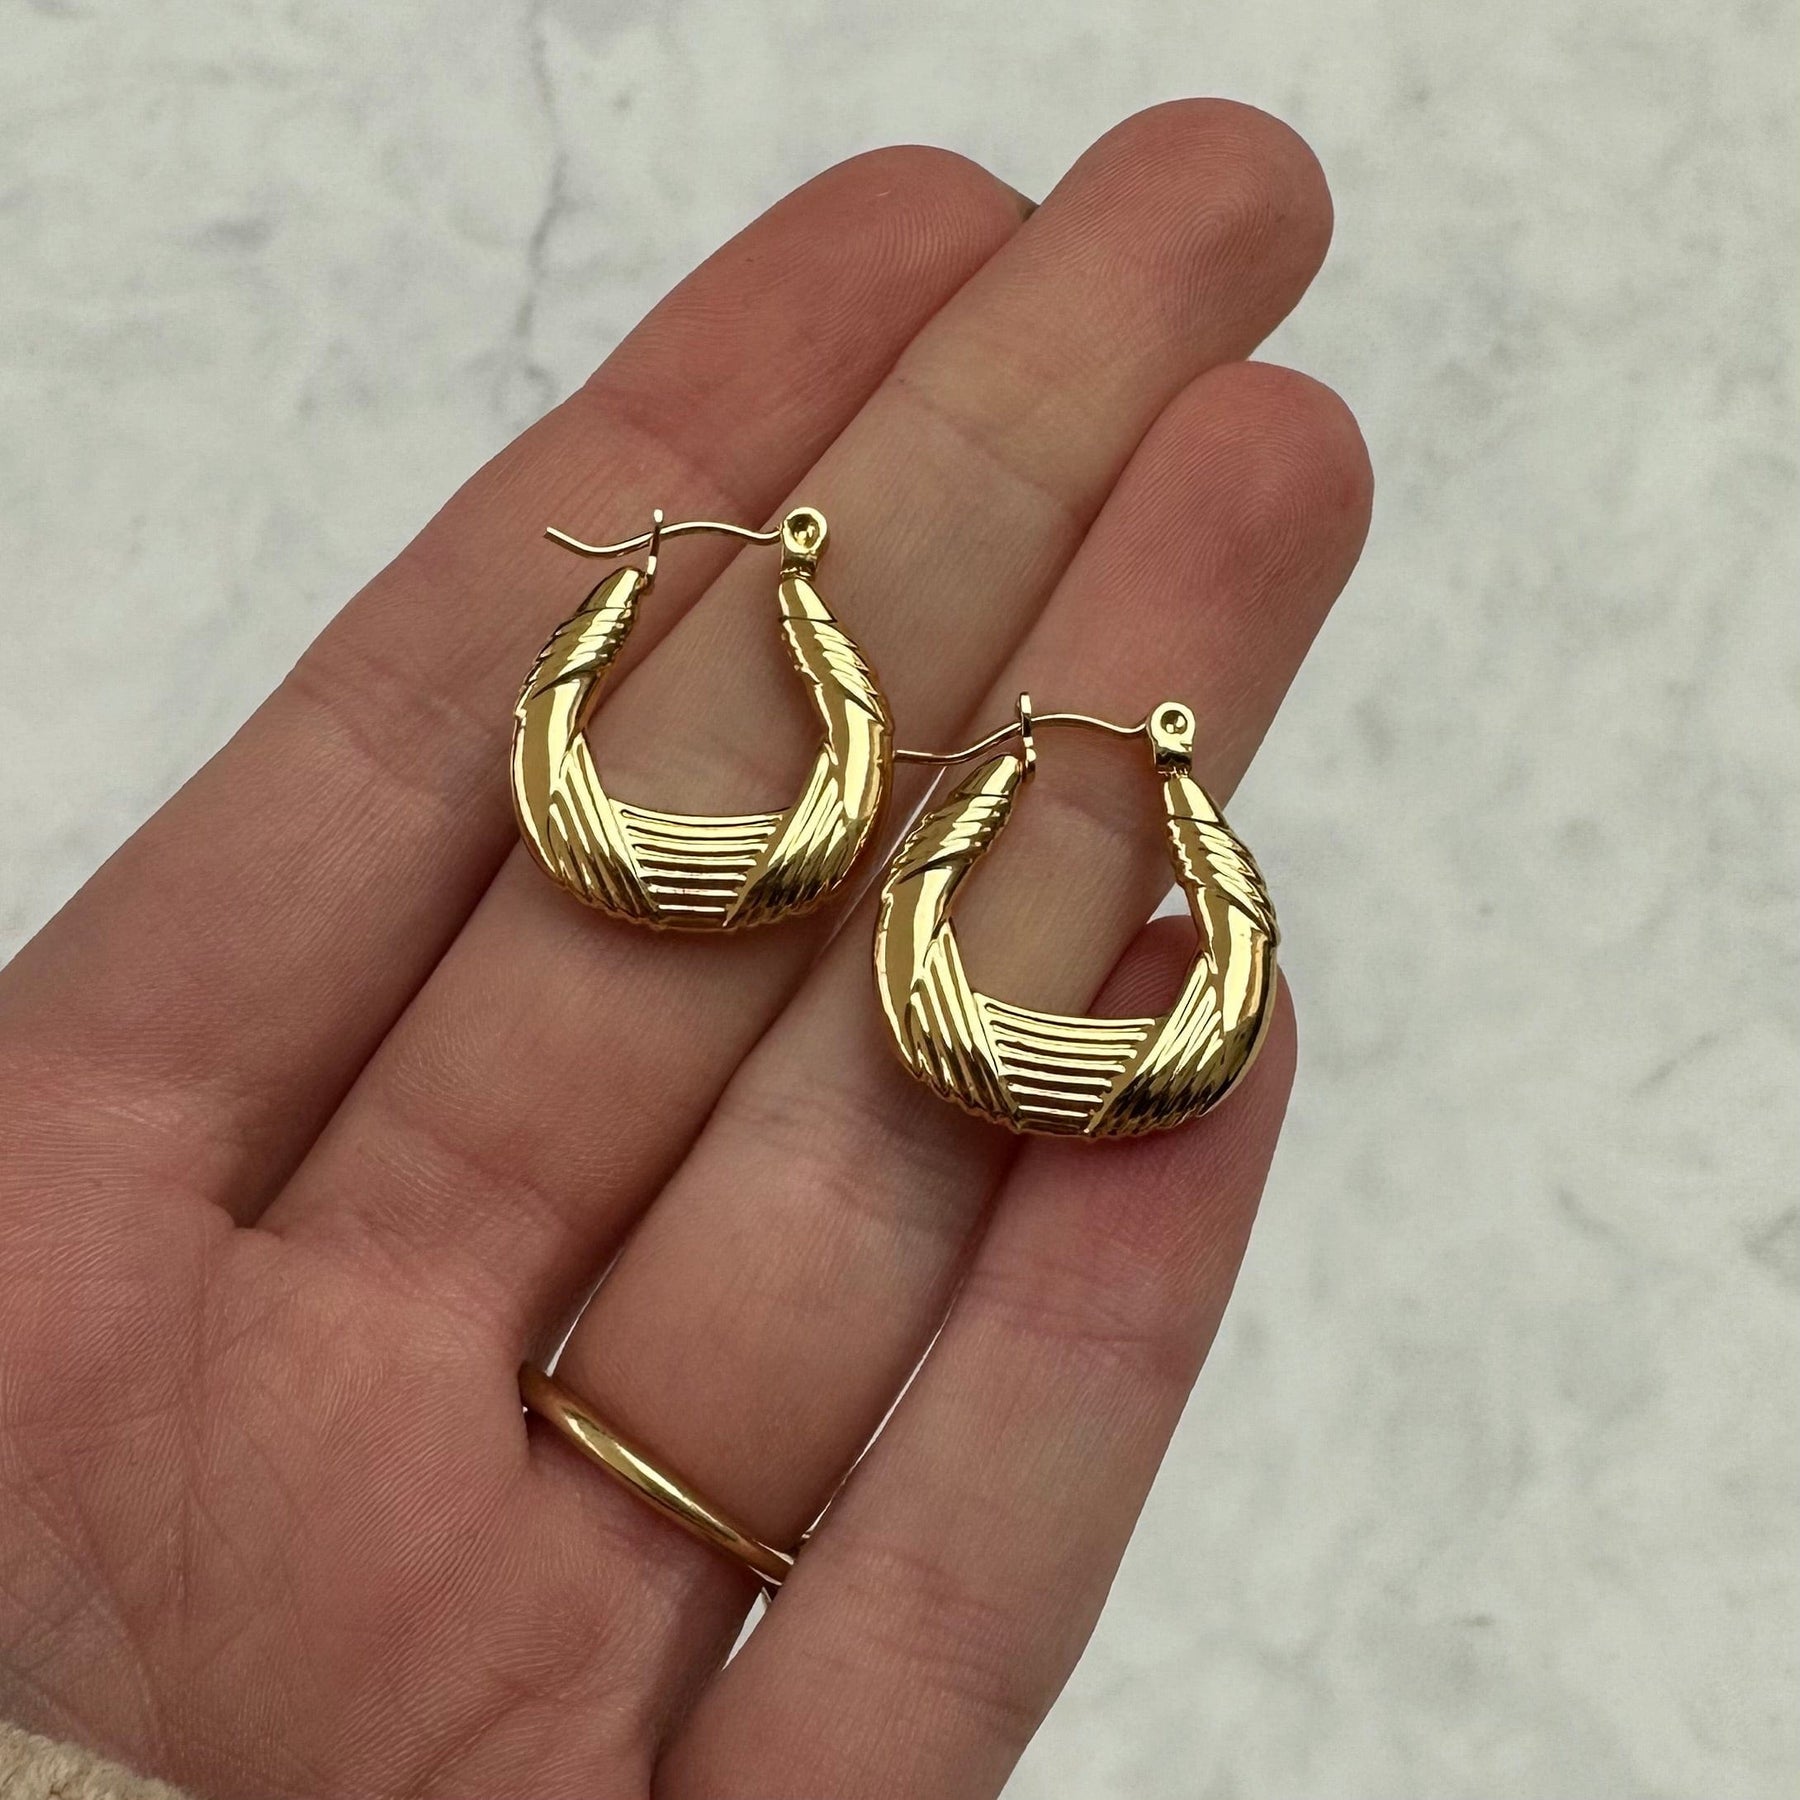 BohoMoon Stainless Steel Alyson Hoop Earrings Gold